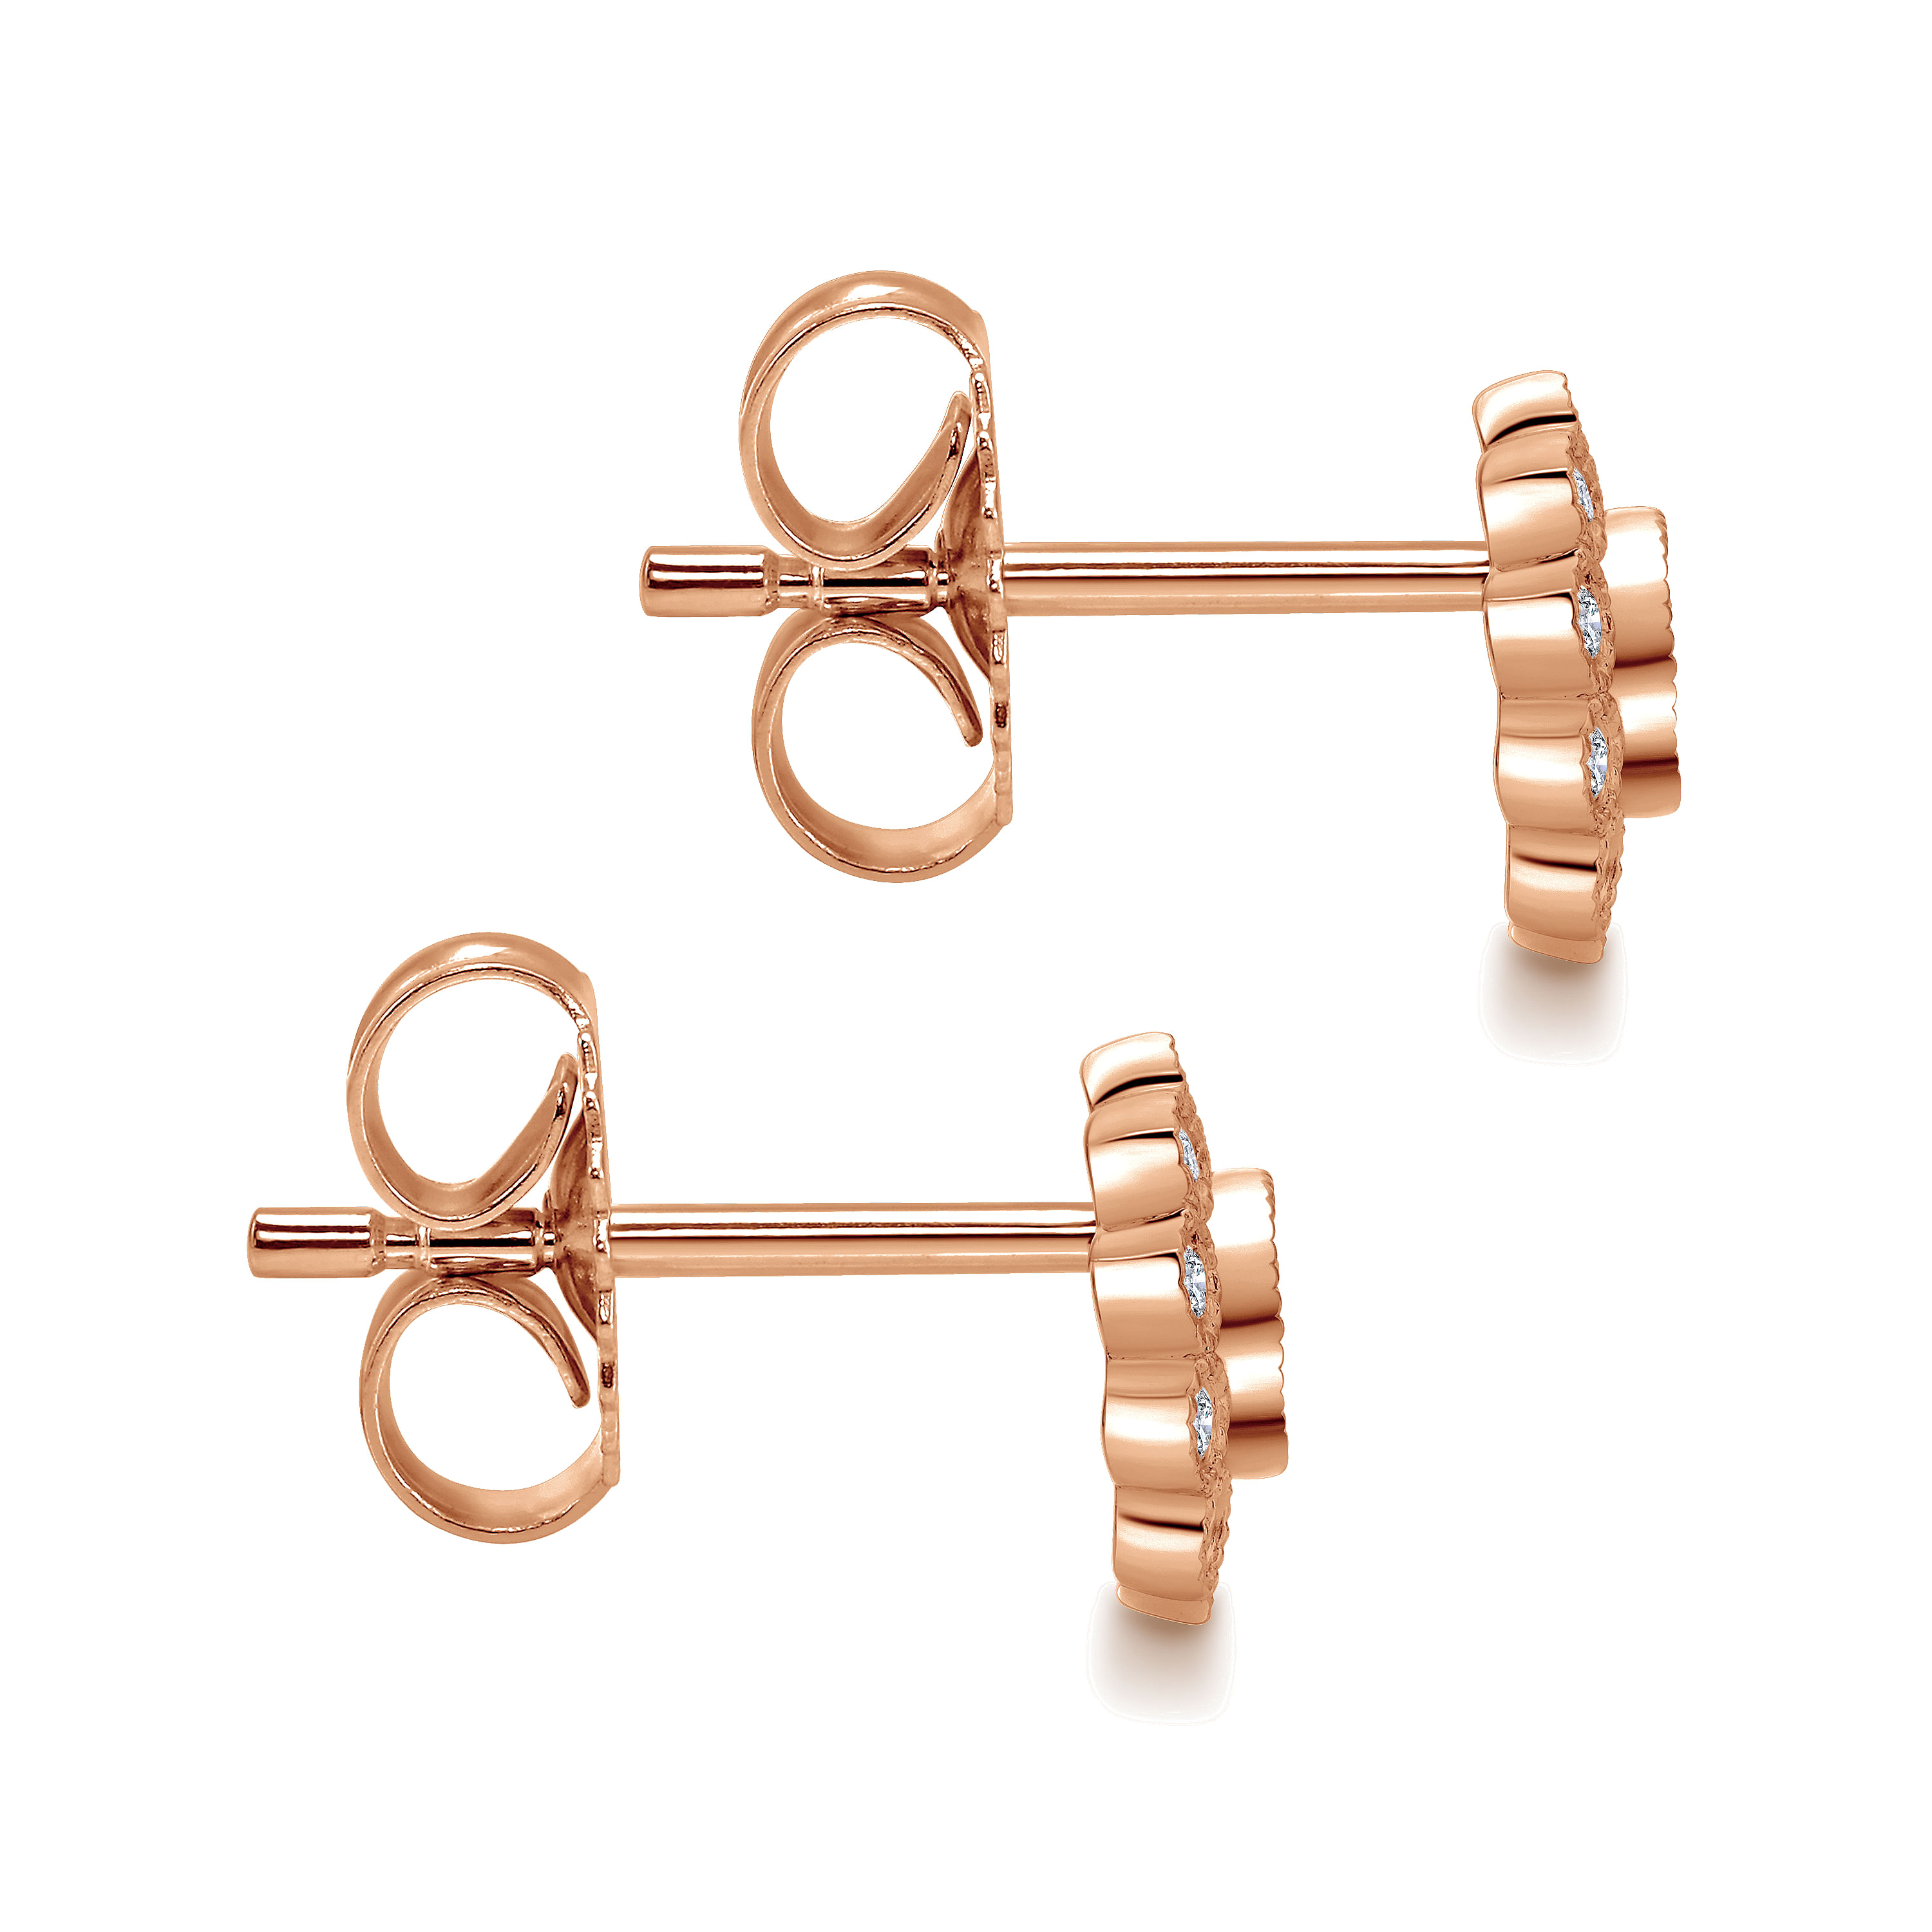 14K Rose Gold Bezel Set Round Diamond Flower Stud Earrings